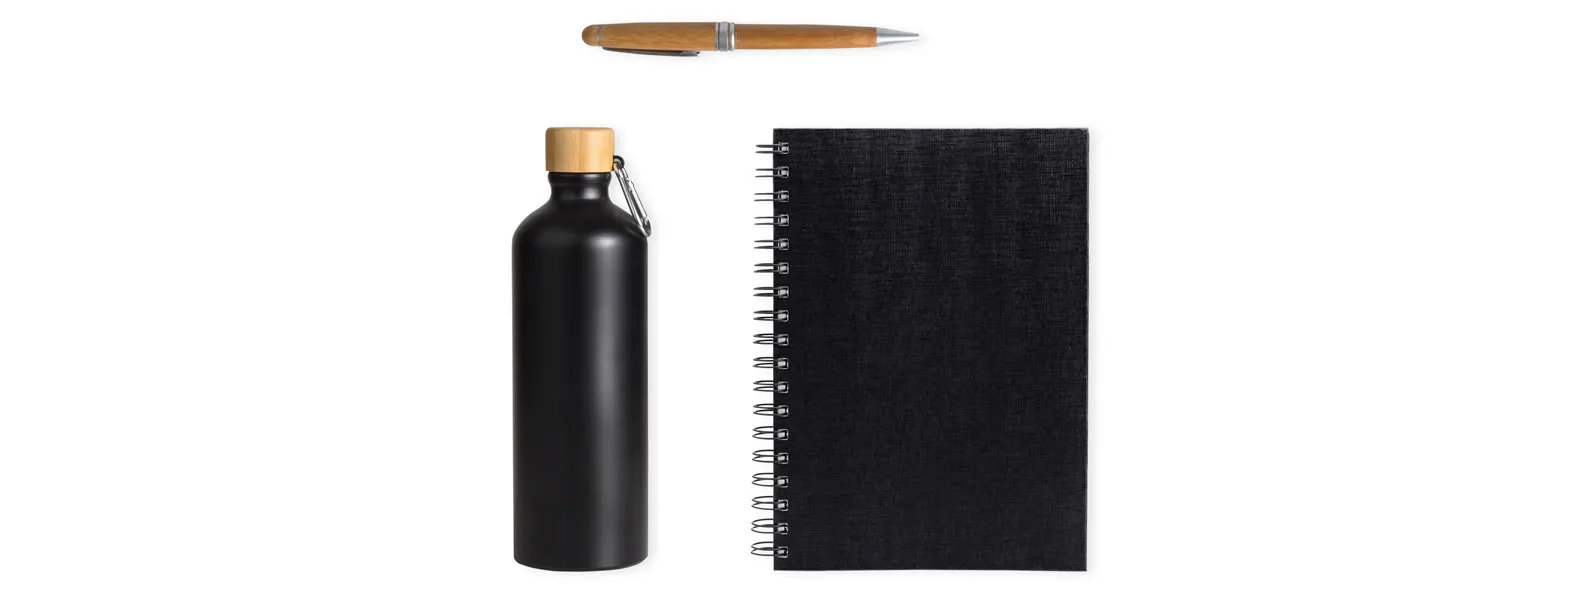 Conta com garrafa, caderno para anotações wire-o preto com capa dura e caneta confeccionada em bambu ecológico.